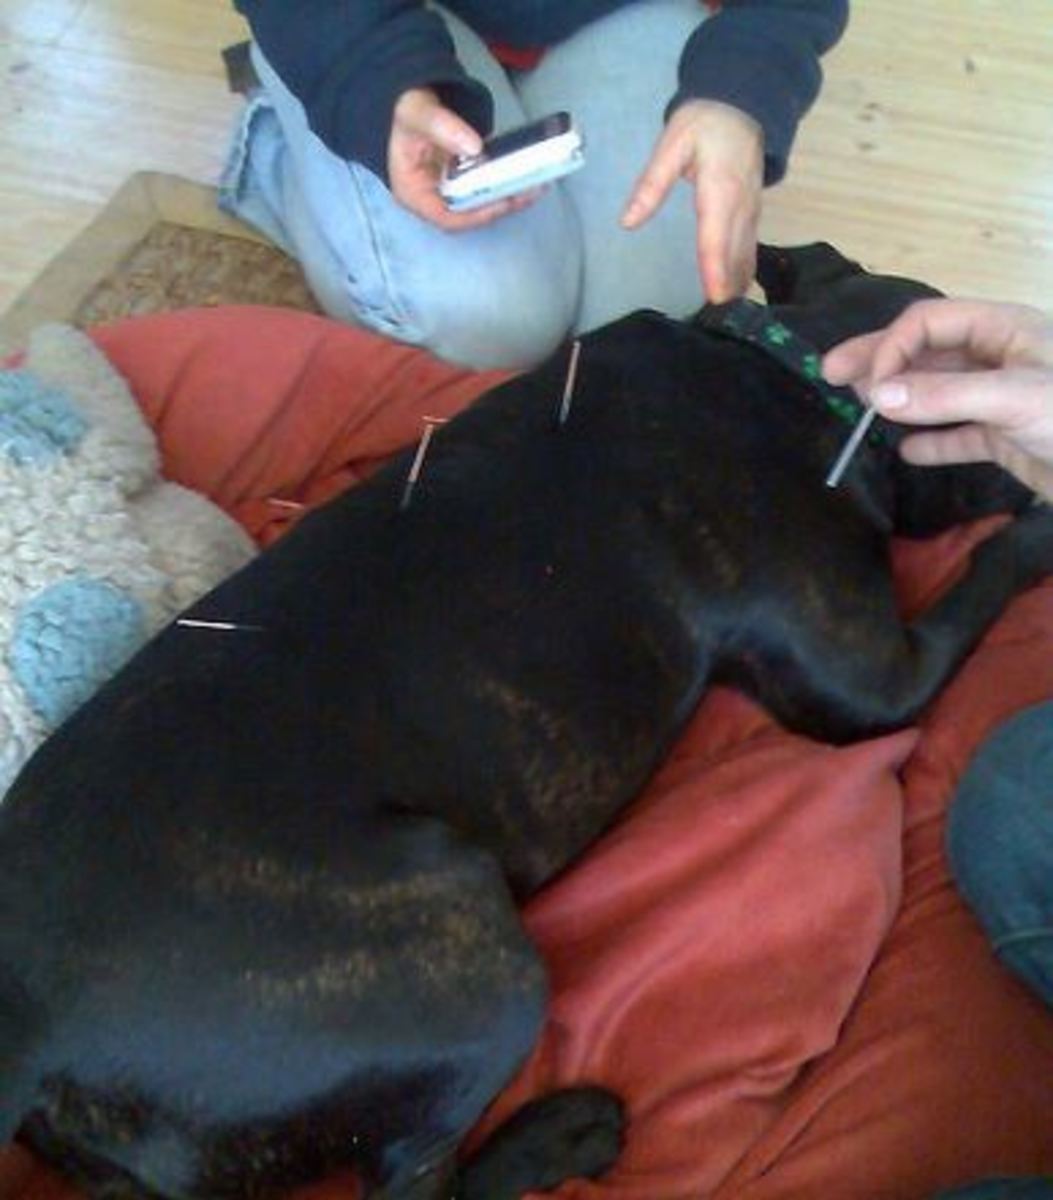 acupuncture dog